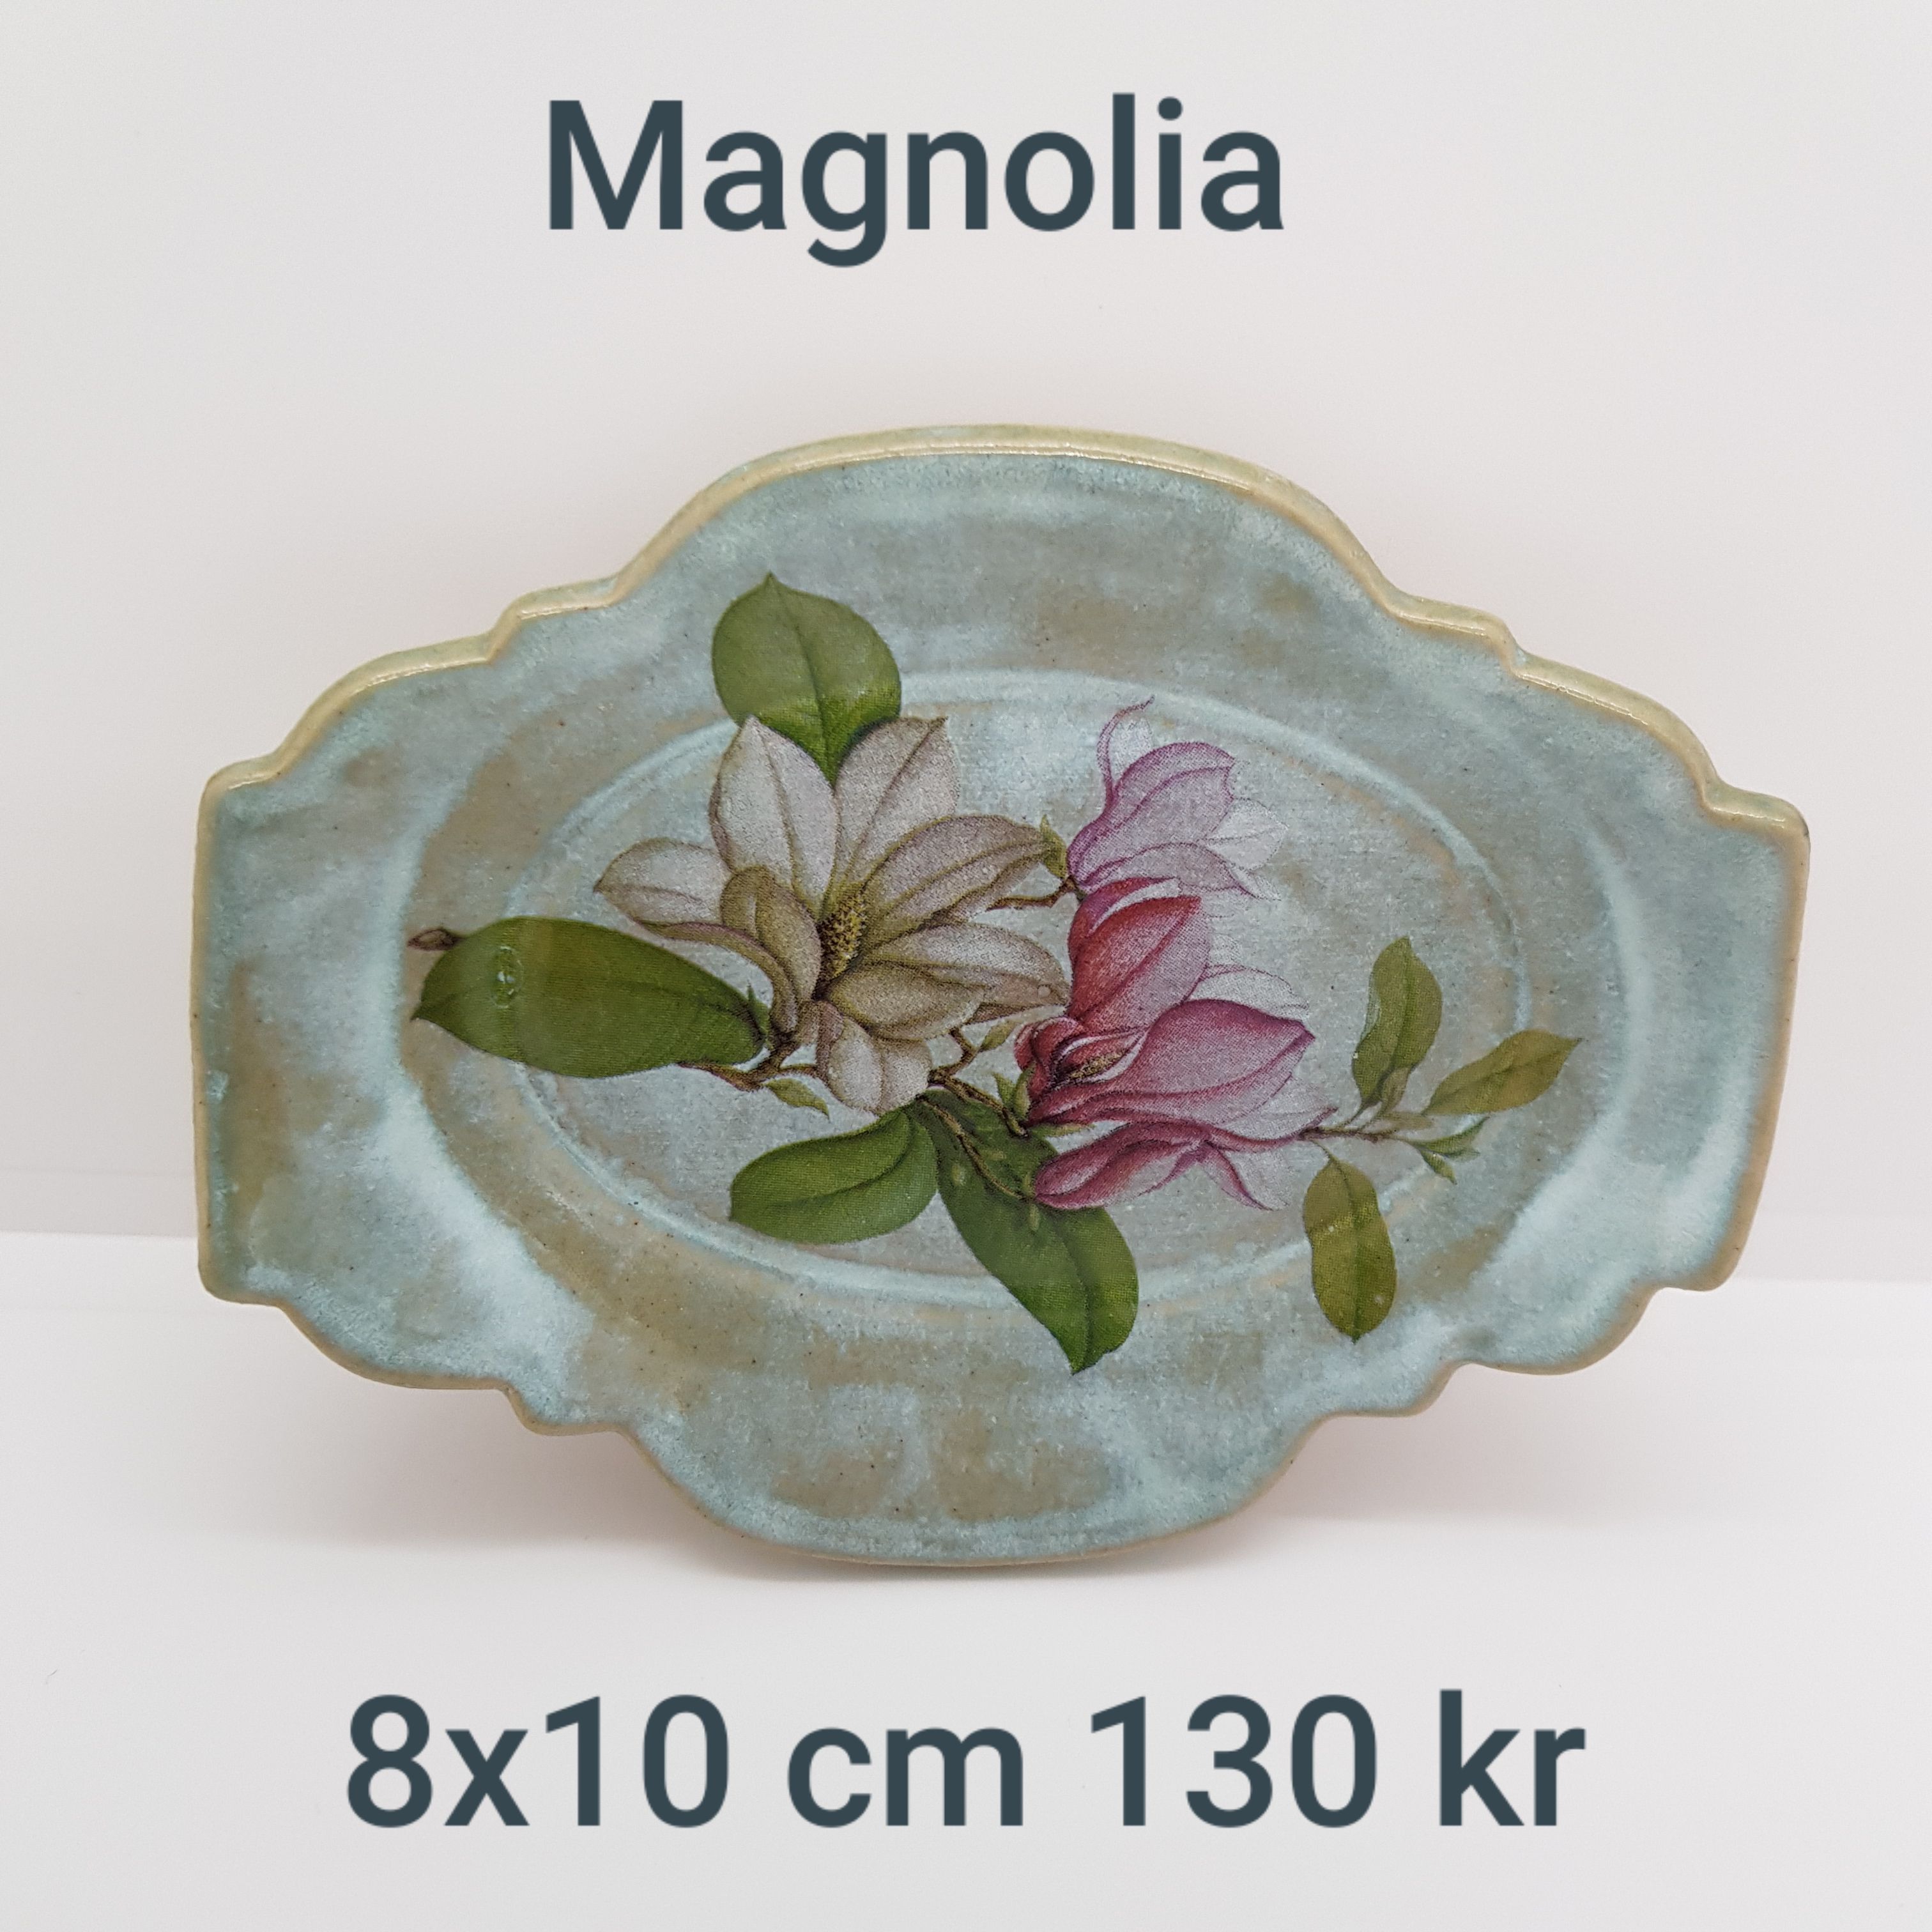 a magnolia fat